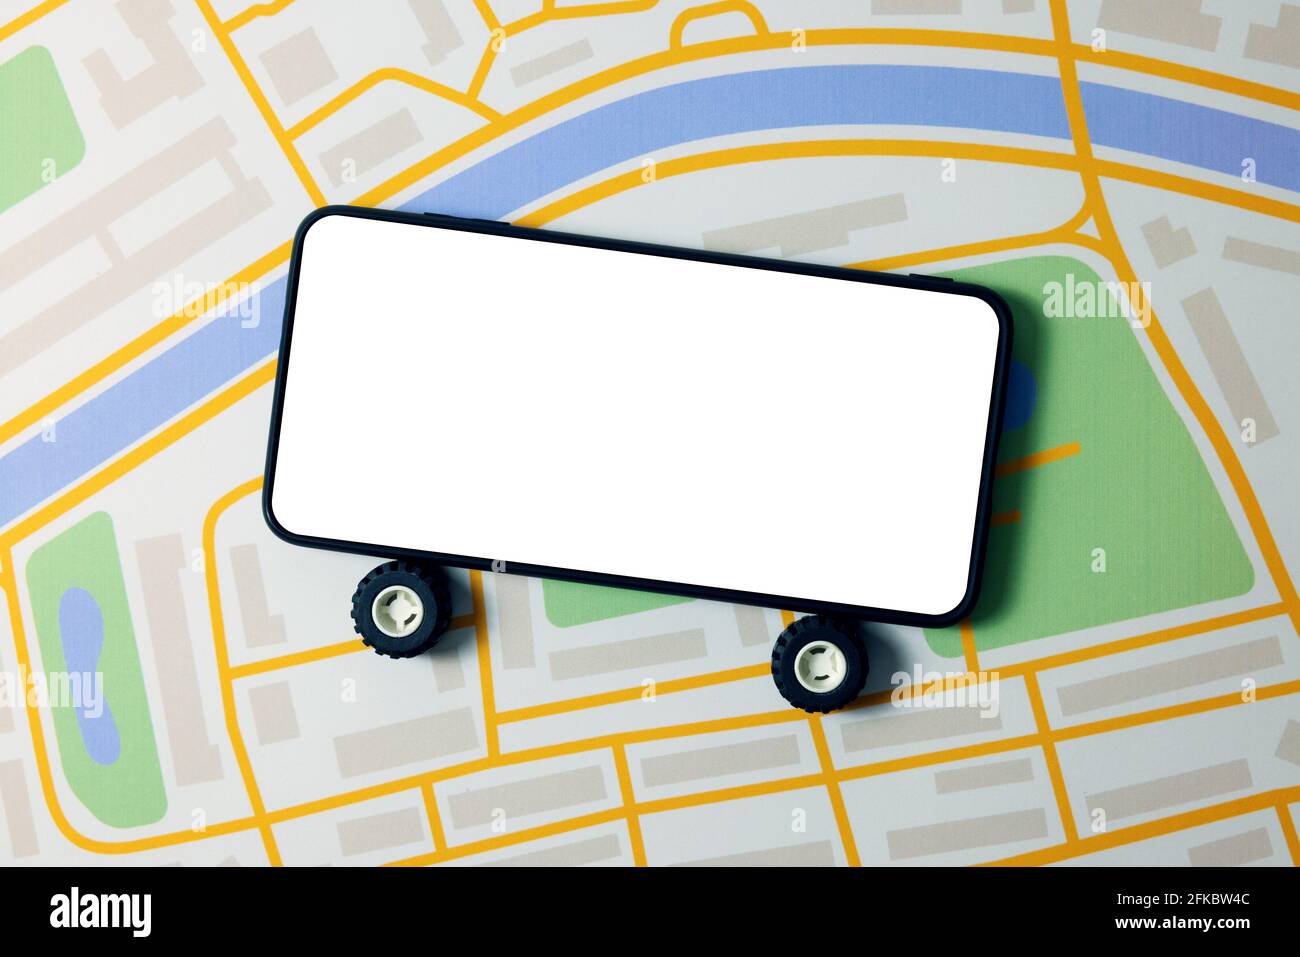 aplicación móvil de alquiler de coches y taxis, teléfono con ruedas y pantalla en blanco en el mapa de la ciudad Foto de stock